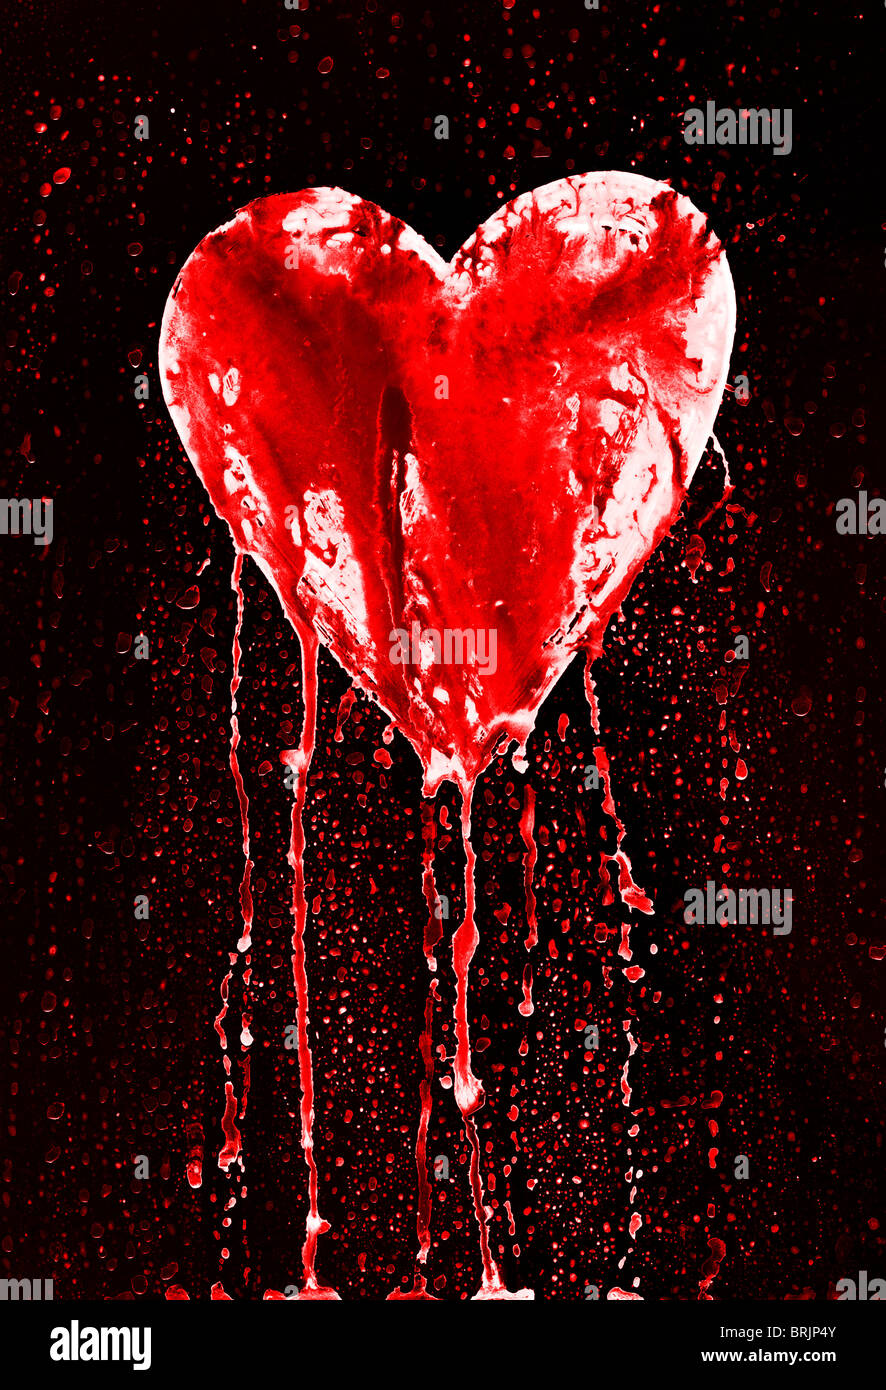 Sangrado y el corazón roto, símbolo del amor - en estilo grunge Foto de stock